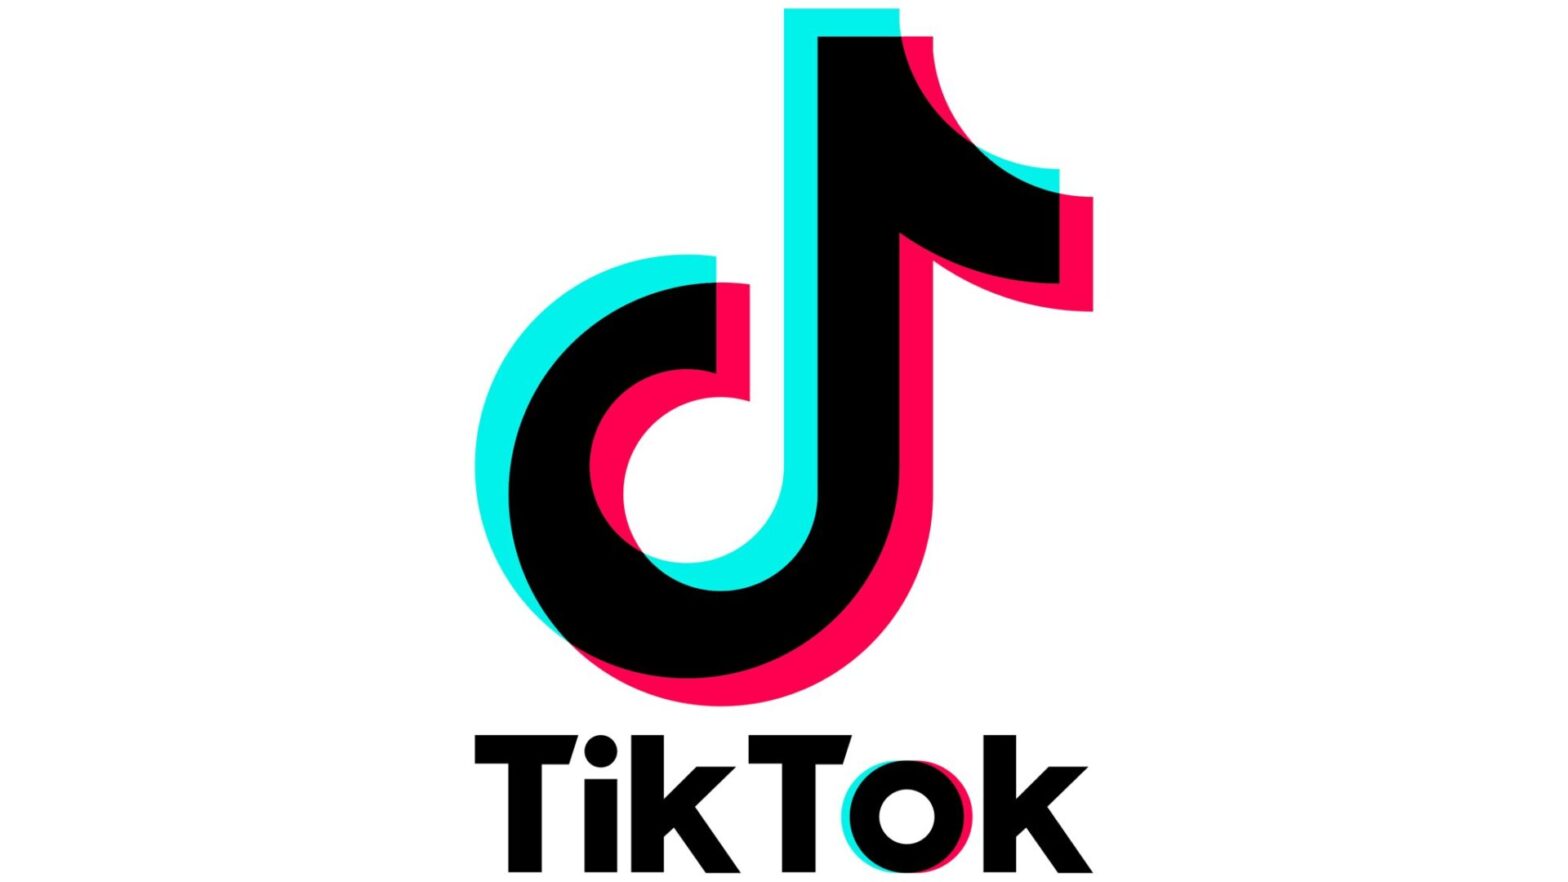 Les ministres français invités à renoncer à TikTok sur leurs smartphones personnels ?